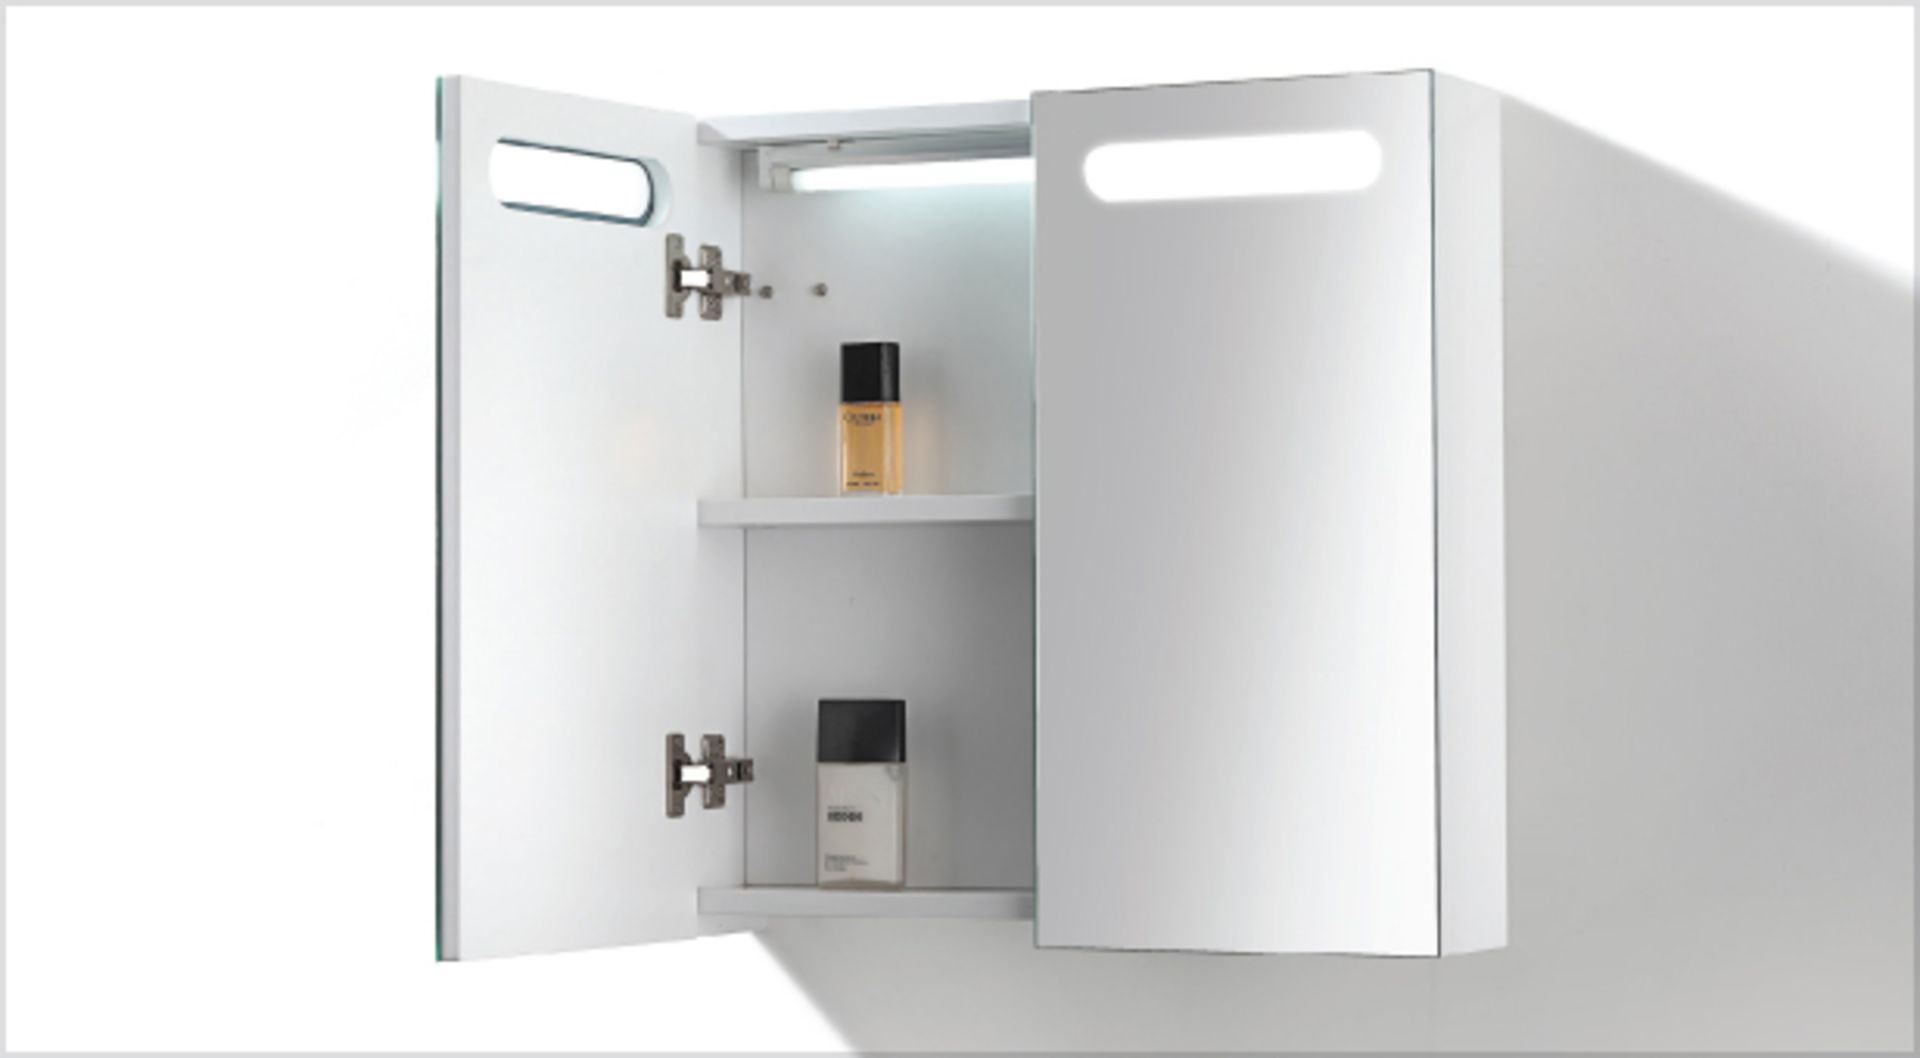 1 x Contemporary Bathroom Eden Mirror Cabinet 45